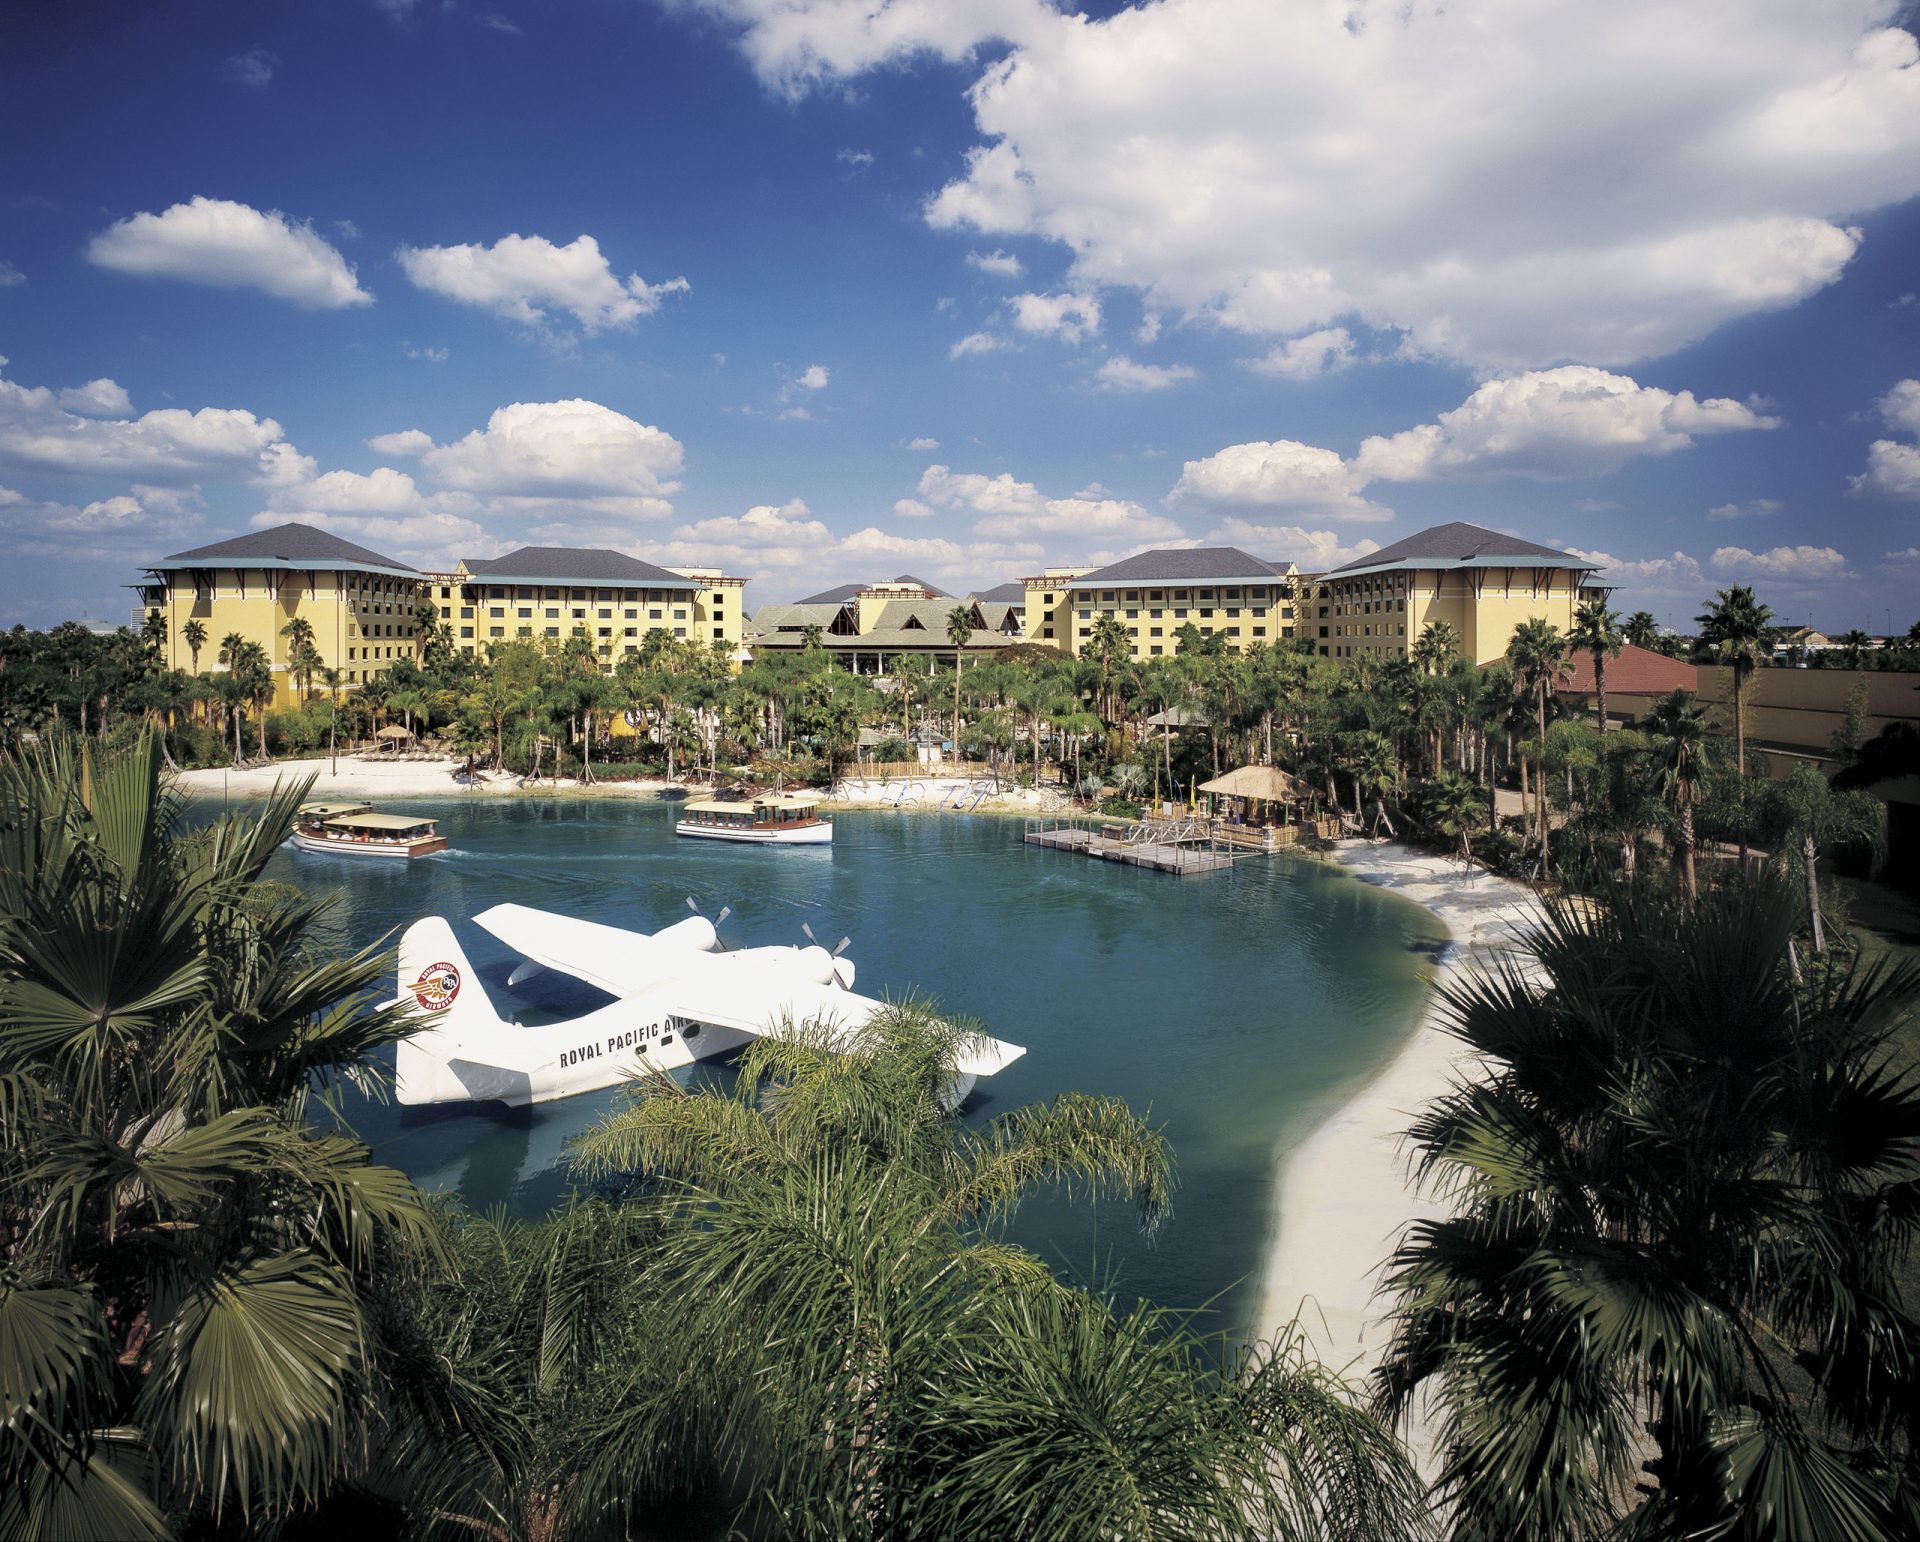 The Royal Pacific Resort at Universal Studios Orlando